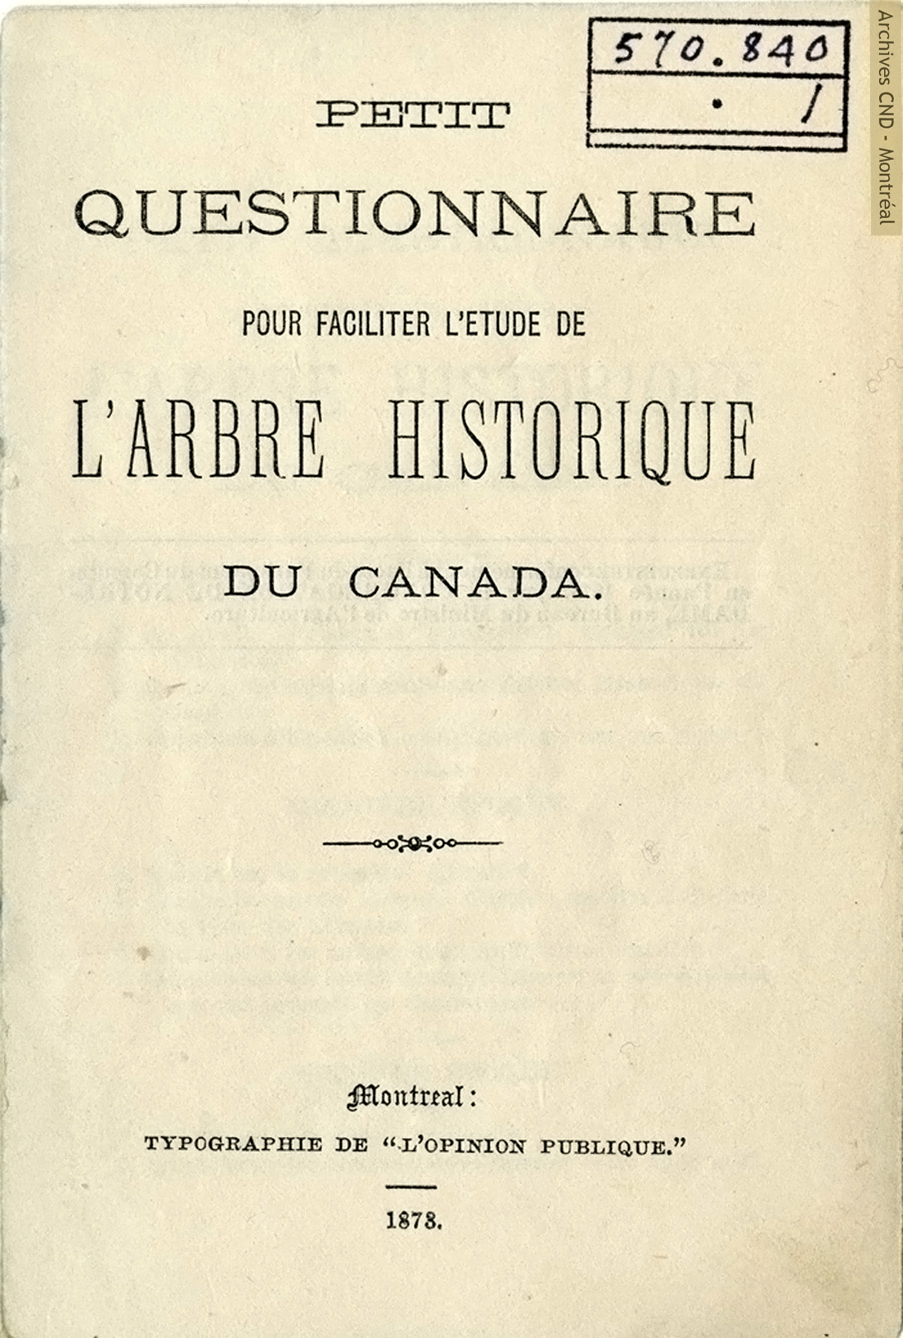 Petit questionnaire pour faciliter l'étude de l'arbre historique du Canada - Title page